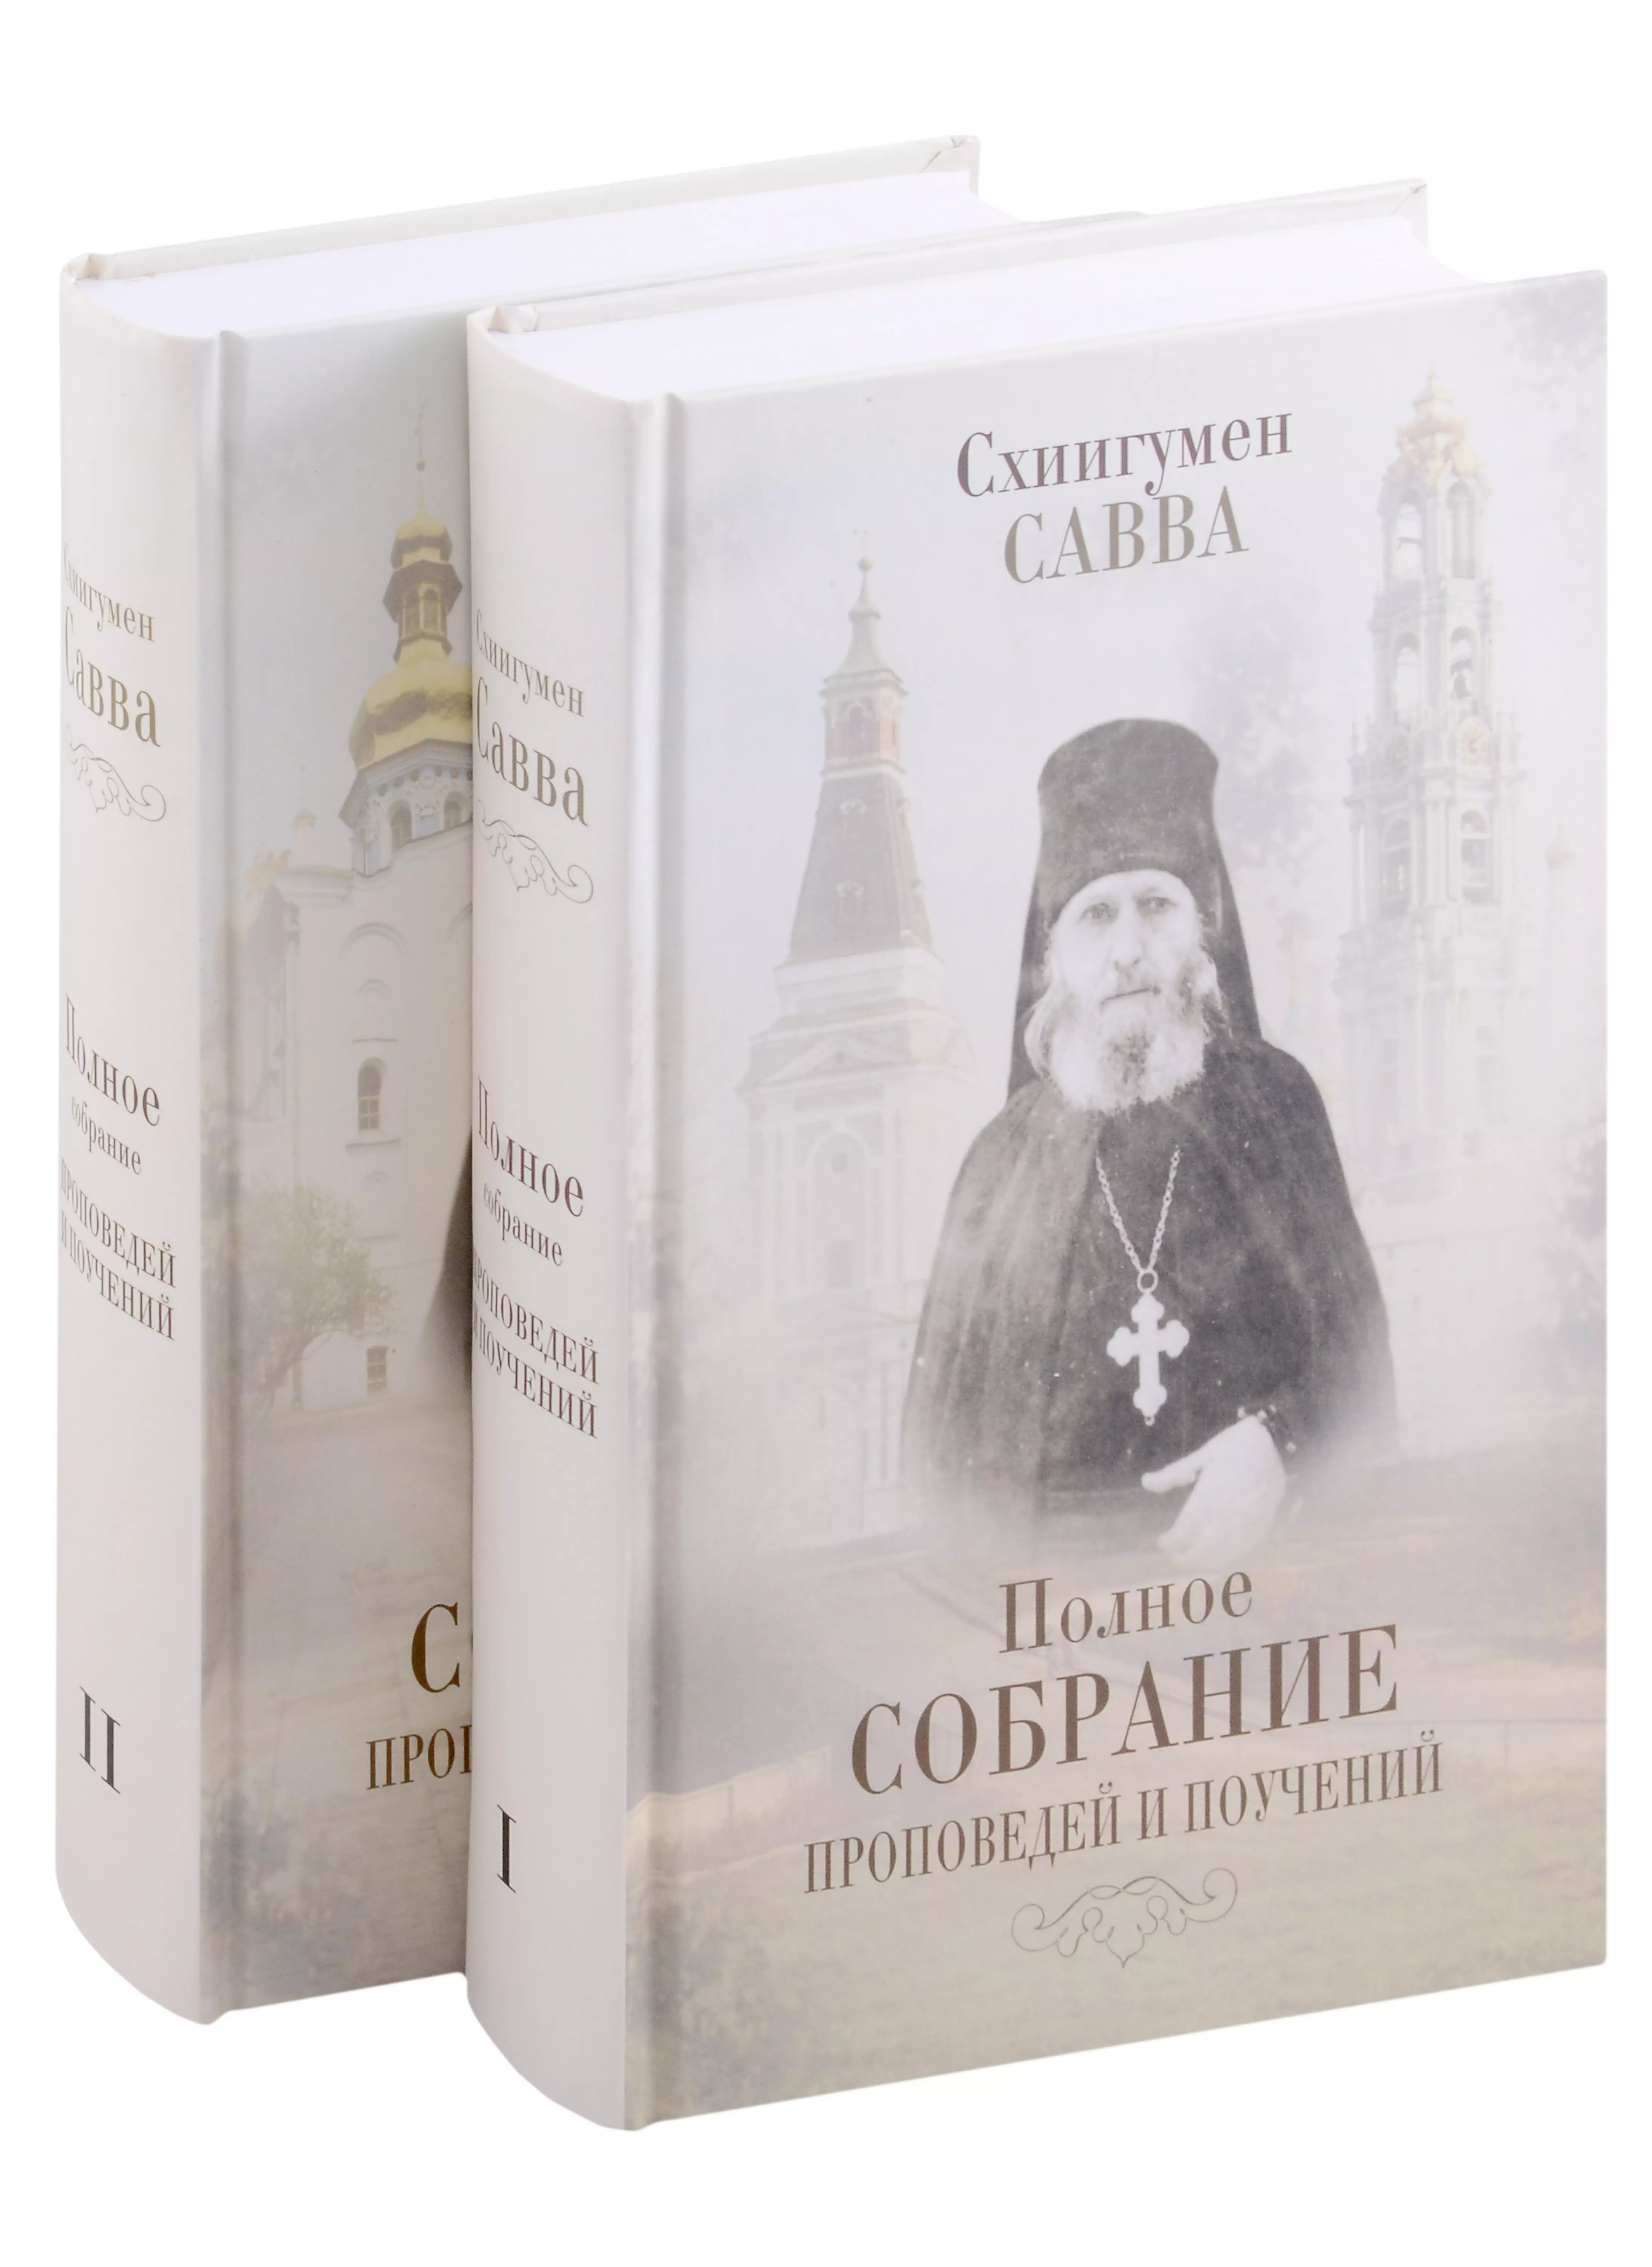 Остапенко Савва - Полное собрание проповедей и поучений (комплект из 2 книг)